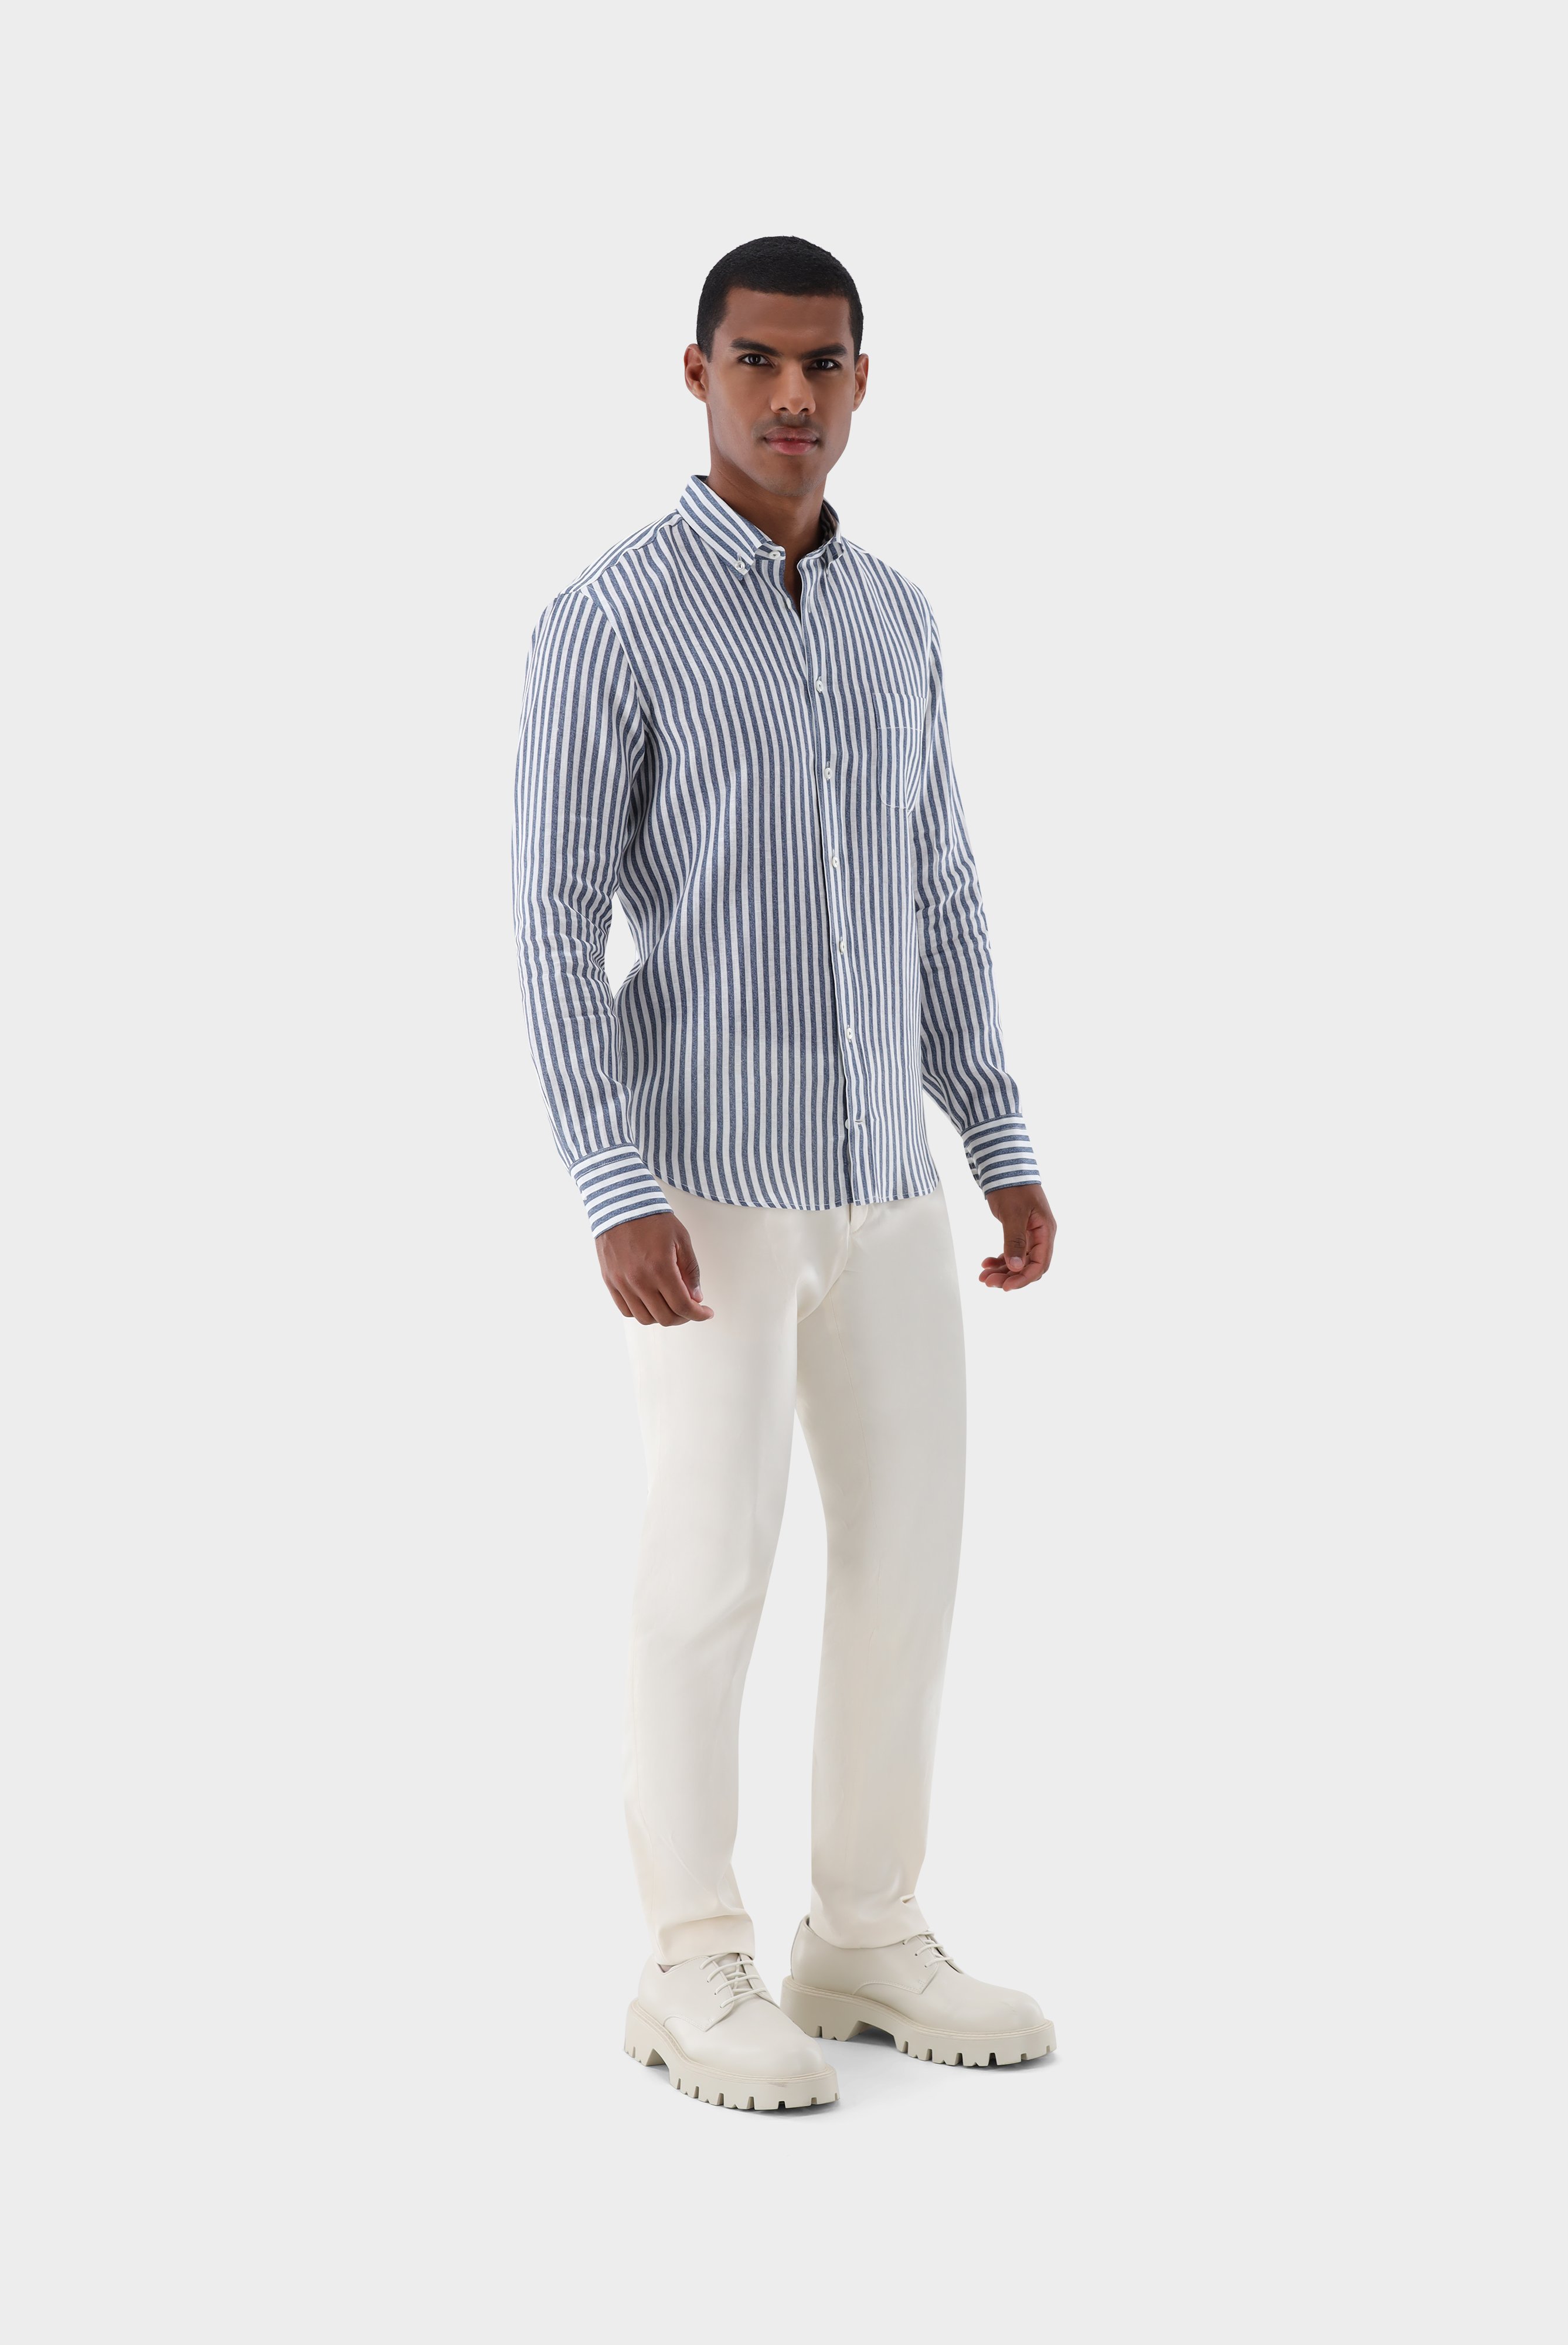 Casual Hemden+Leinenhemd mit Streifen-Druck Tailor Fit+20.2013.9V.170352.780.40